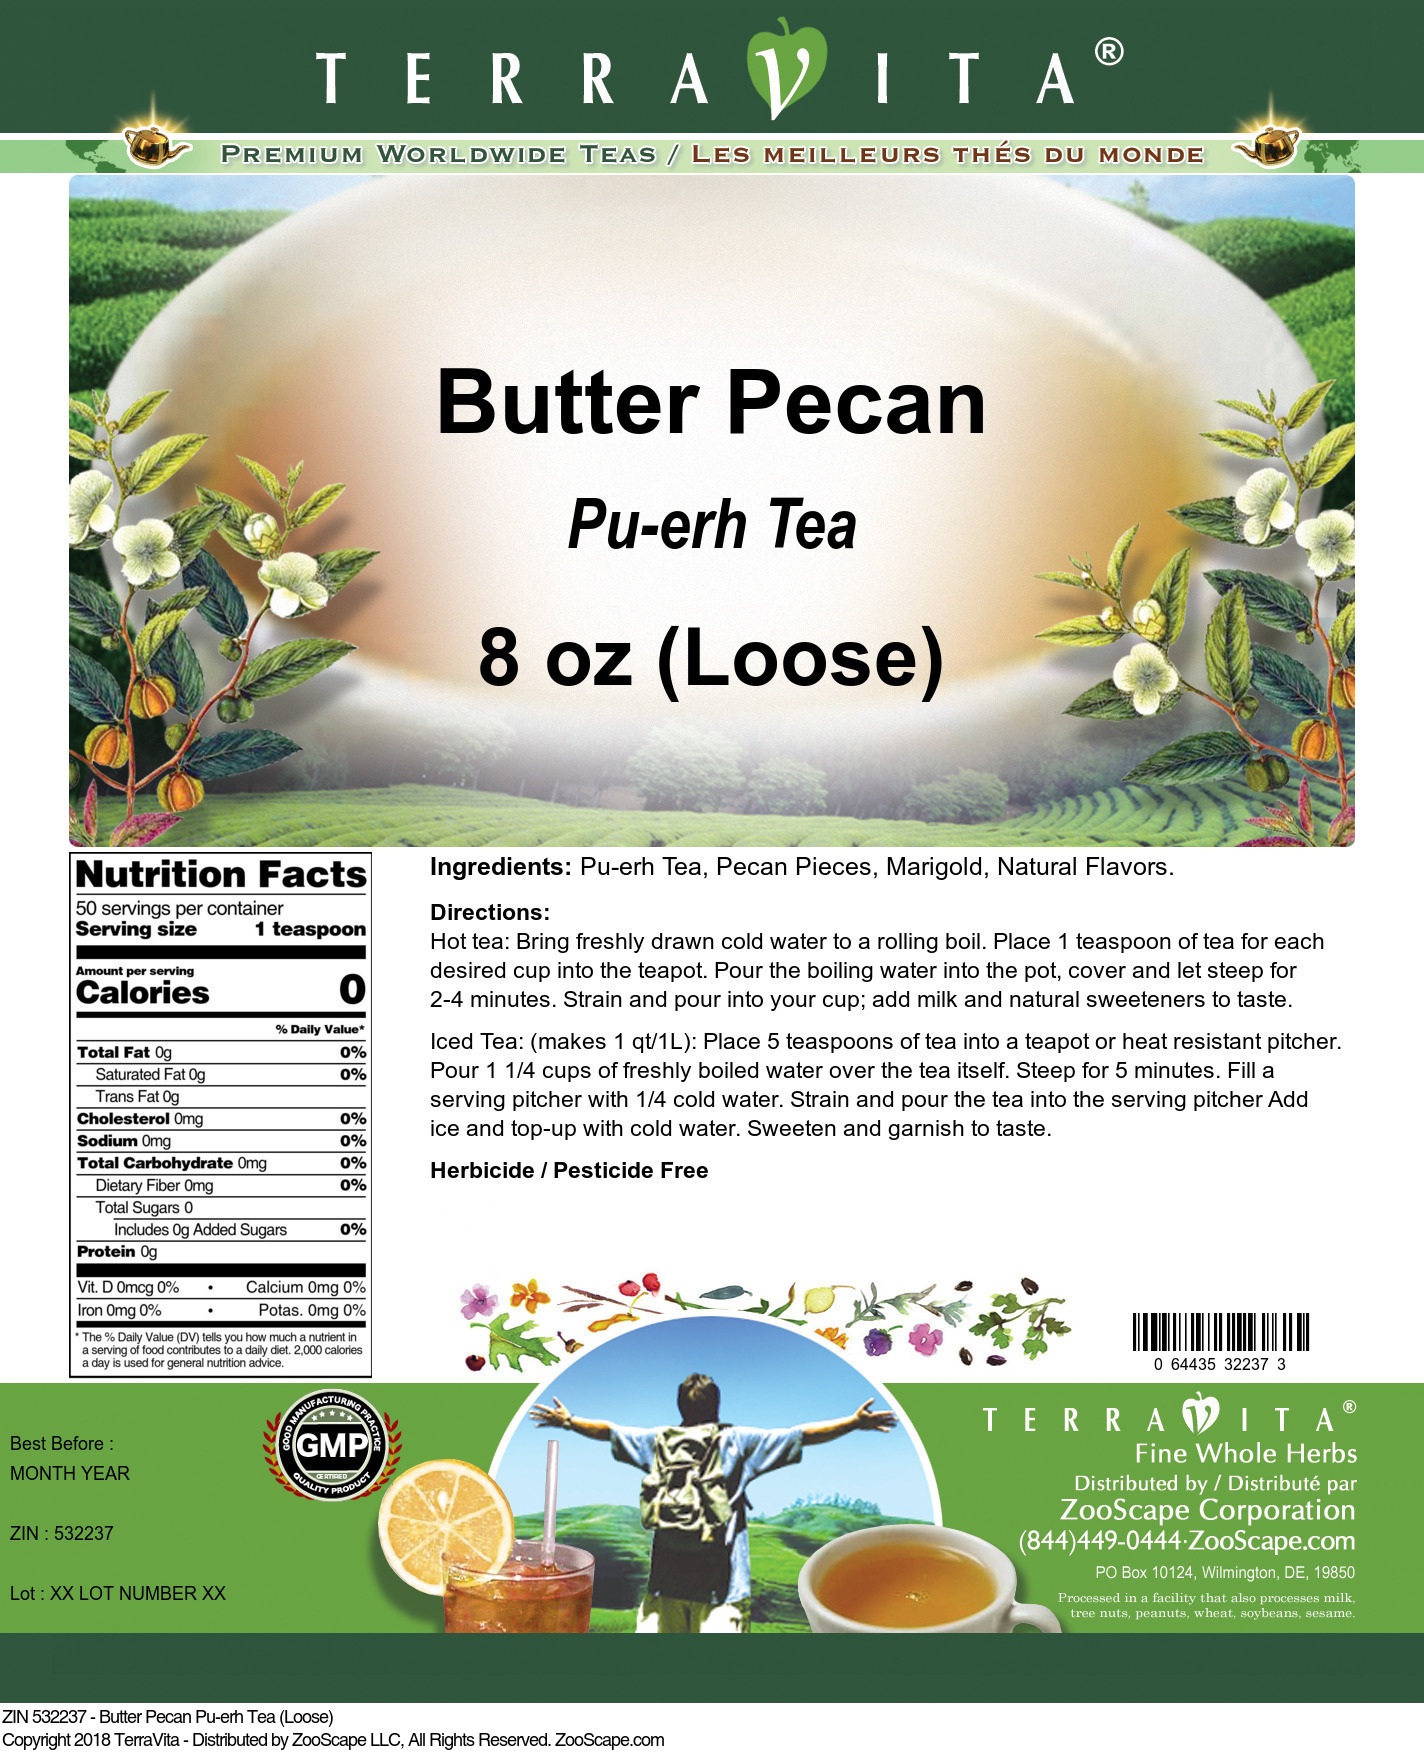 Butter Pecan Pu-erh Tea (Loose) - Label